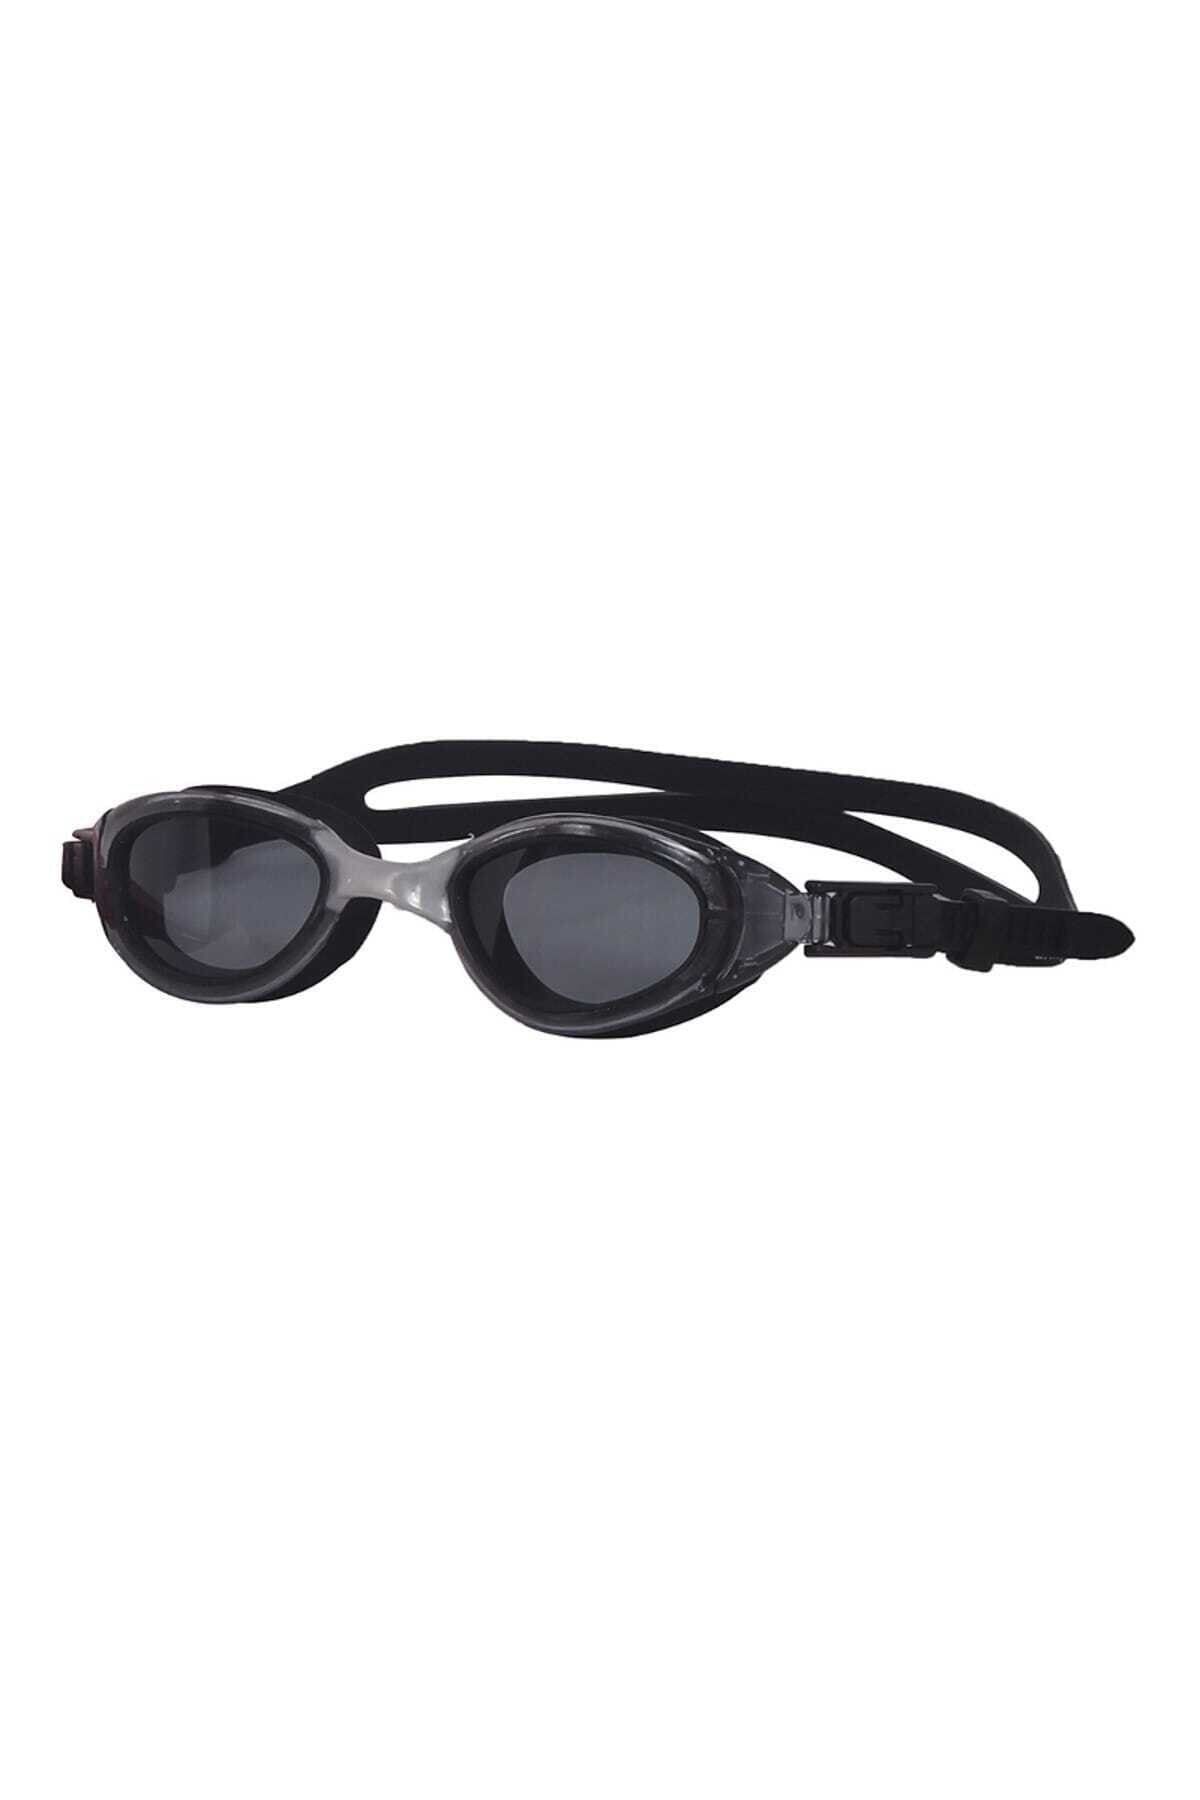 uhlsport Unisex Yüzücü Gözlüğü -  - 12.20.005.001.036.001